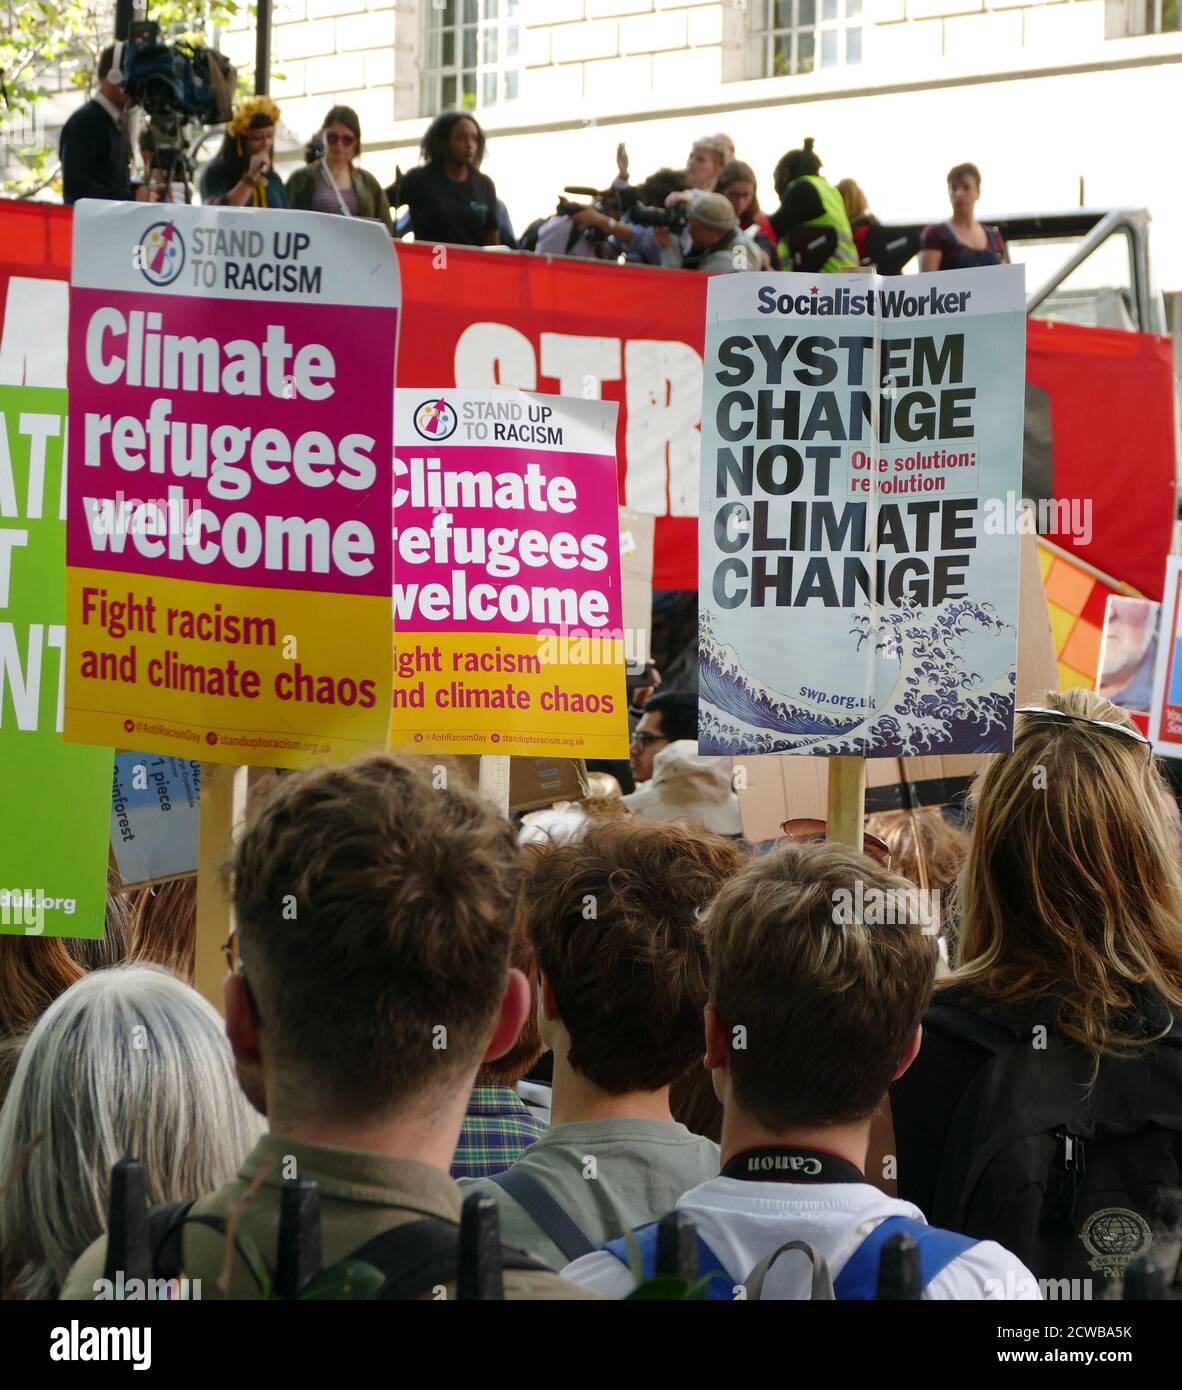 Demonstranten bei einer Kundgebung in Milbank, in der Nähe des Parlaments, London, während des Klimastreiks vom 20. September 2019. Auch bekannt als die Globale Woche der Zukunft, eine Reihe von internationalen Streiks und Protesten, um Maßnahmen gegen den Klimawandel zu fordern. Die Proteste vom 20. September waren wahrscheinlich die größten Klimaangriffe der Weltgeschichte. Die Organisatoren berichteten, dass weltweit über 4 Millionen Menschen an Streiks teilgenommen haben, darunter 300000 Menschen, die sich britischen Protesten angeschlossen haben. Greta Thunberg, (* 3. Januar 2003), schwedische Umweltaktivistin, hat sich die globale Sensibilisierung für die Risiken des Klimas zugeschrieben Stockfoto